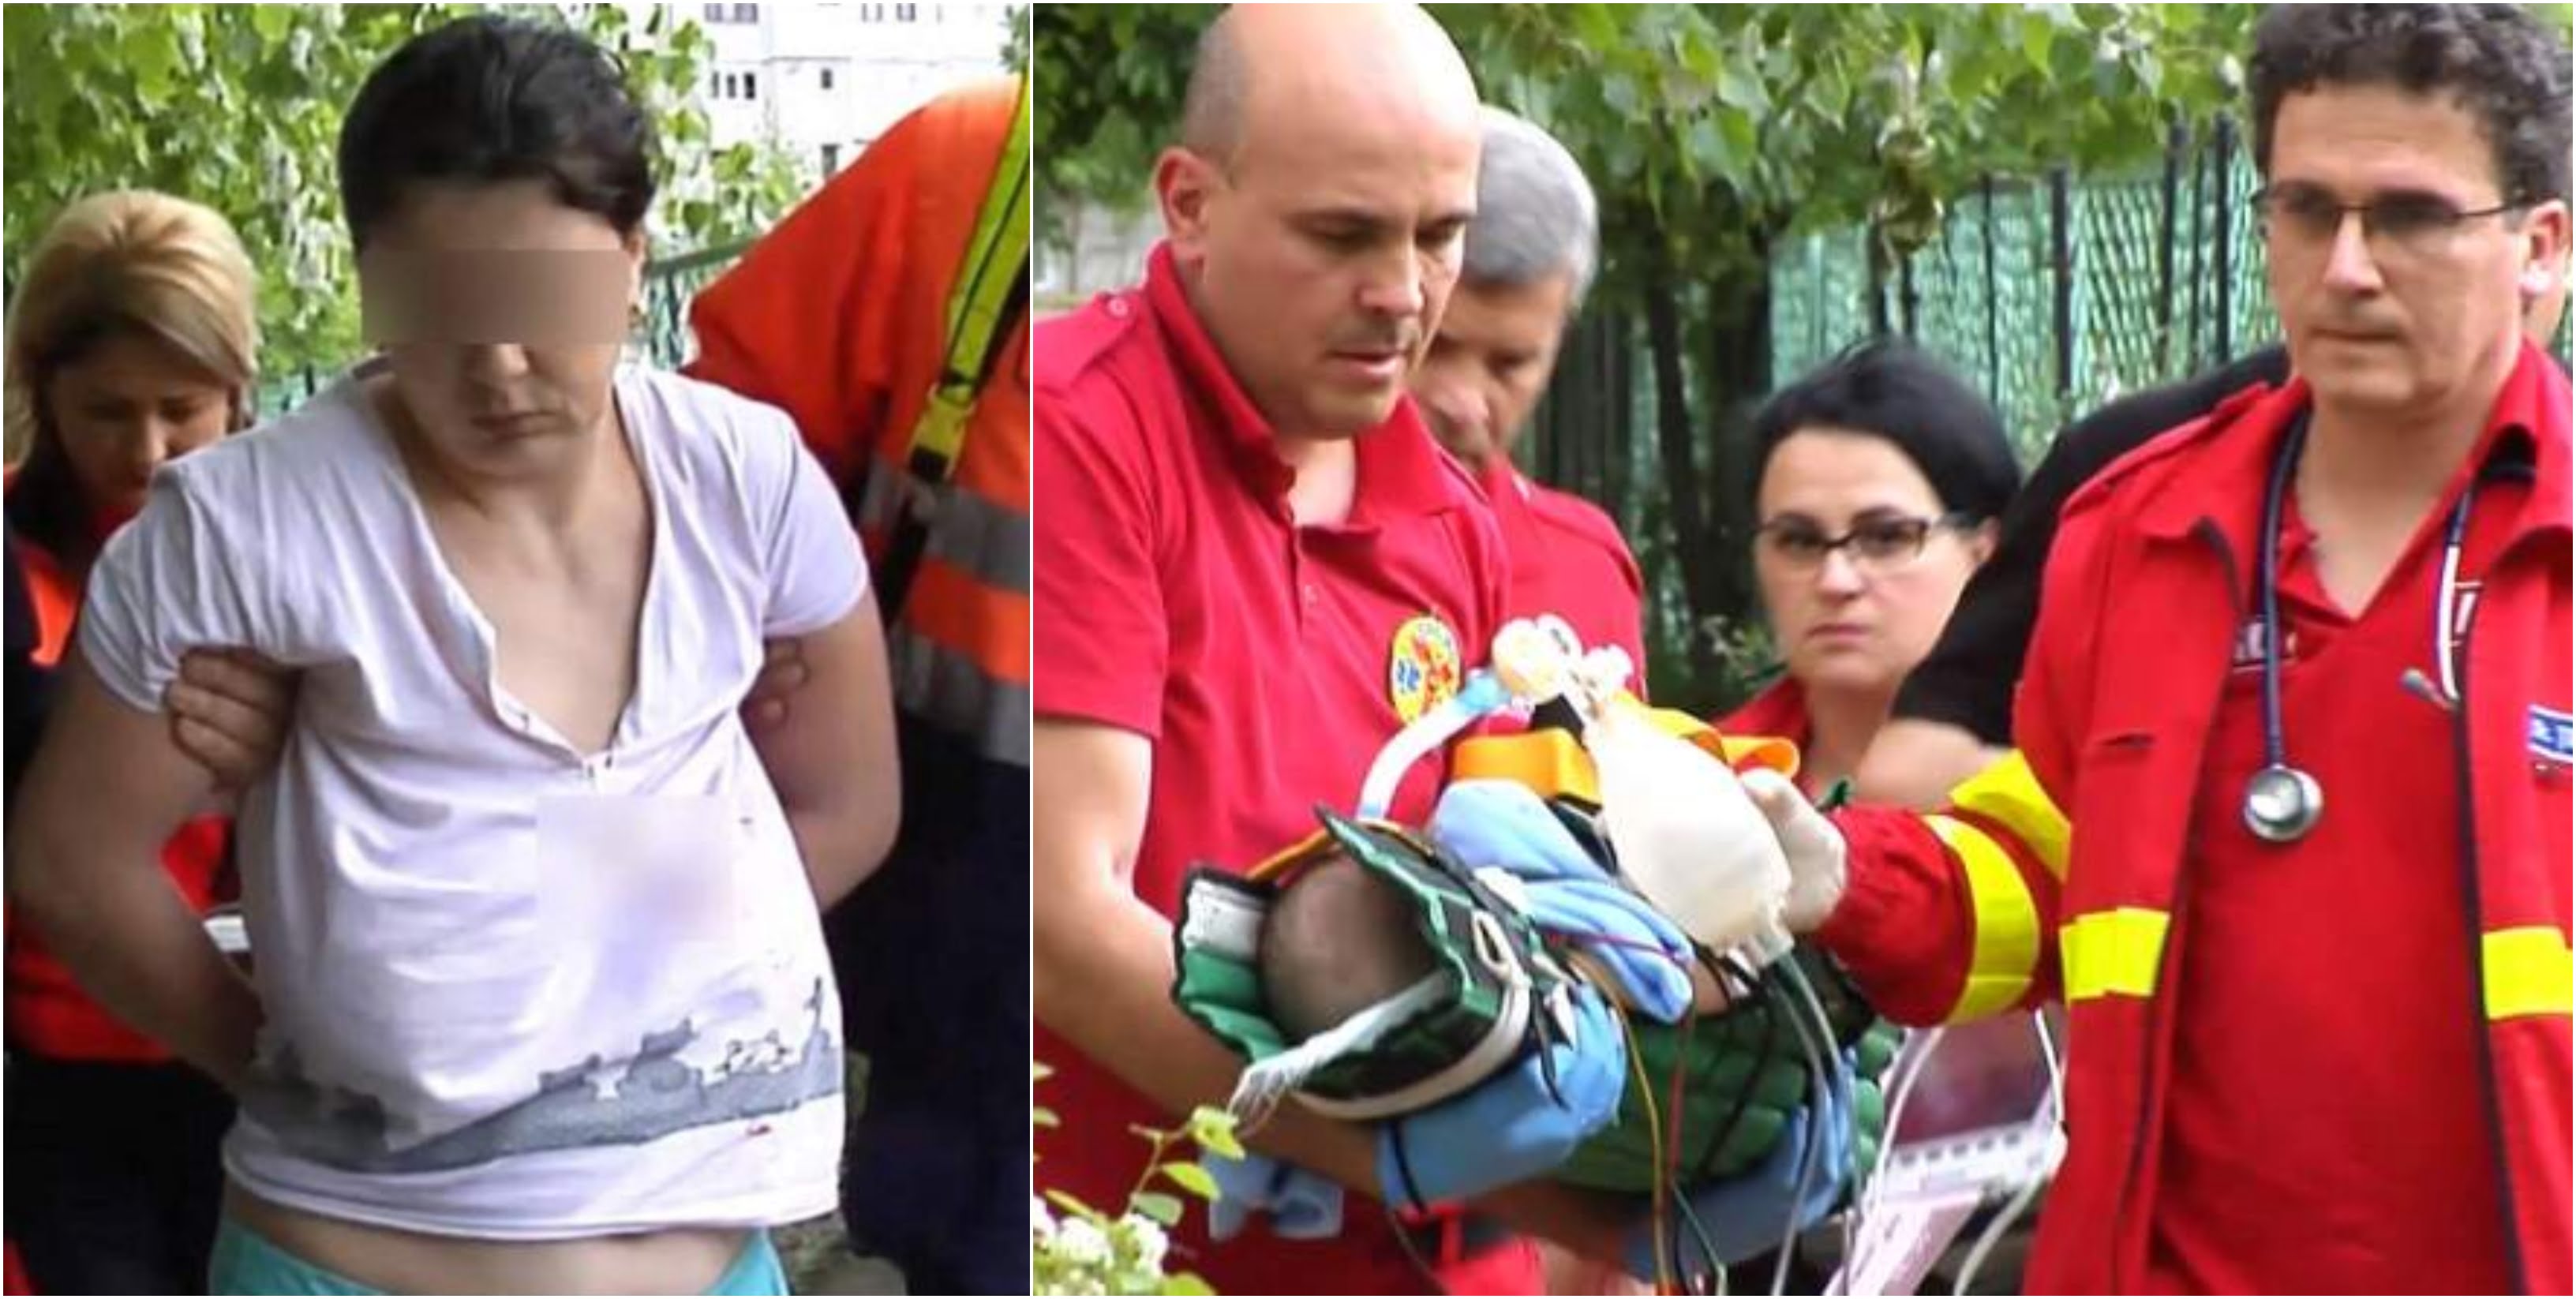 O mama din Galati si-a strangulat bebelusul de 8 luni. Femeia sufera de depresie VIDEO | Demamici.ro